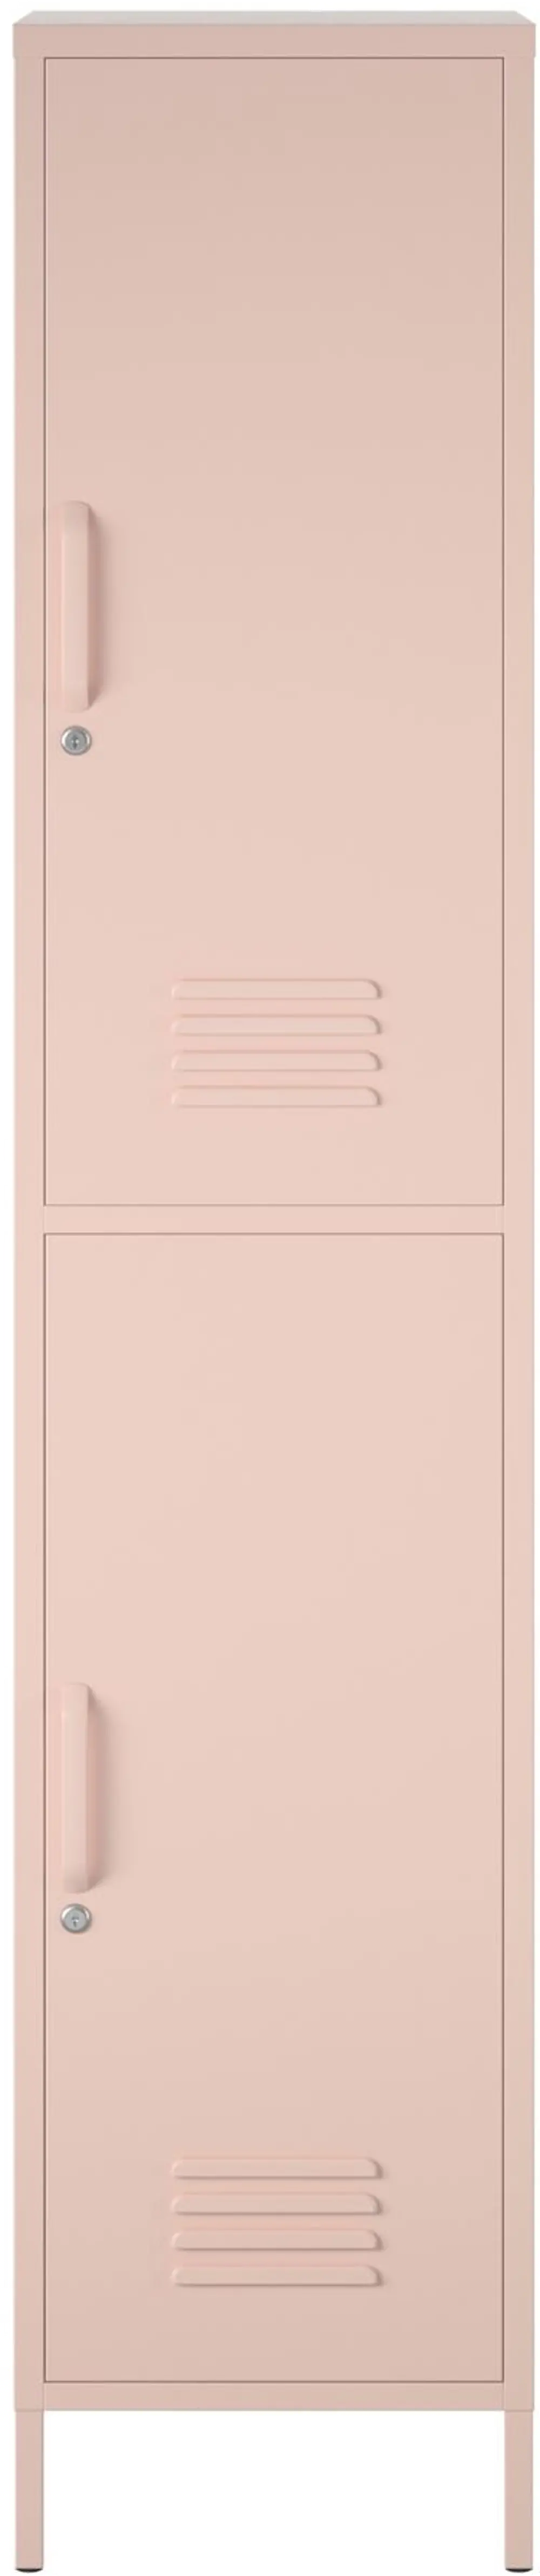 Evolution 2 Door Pink Locker-1